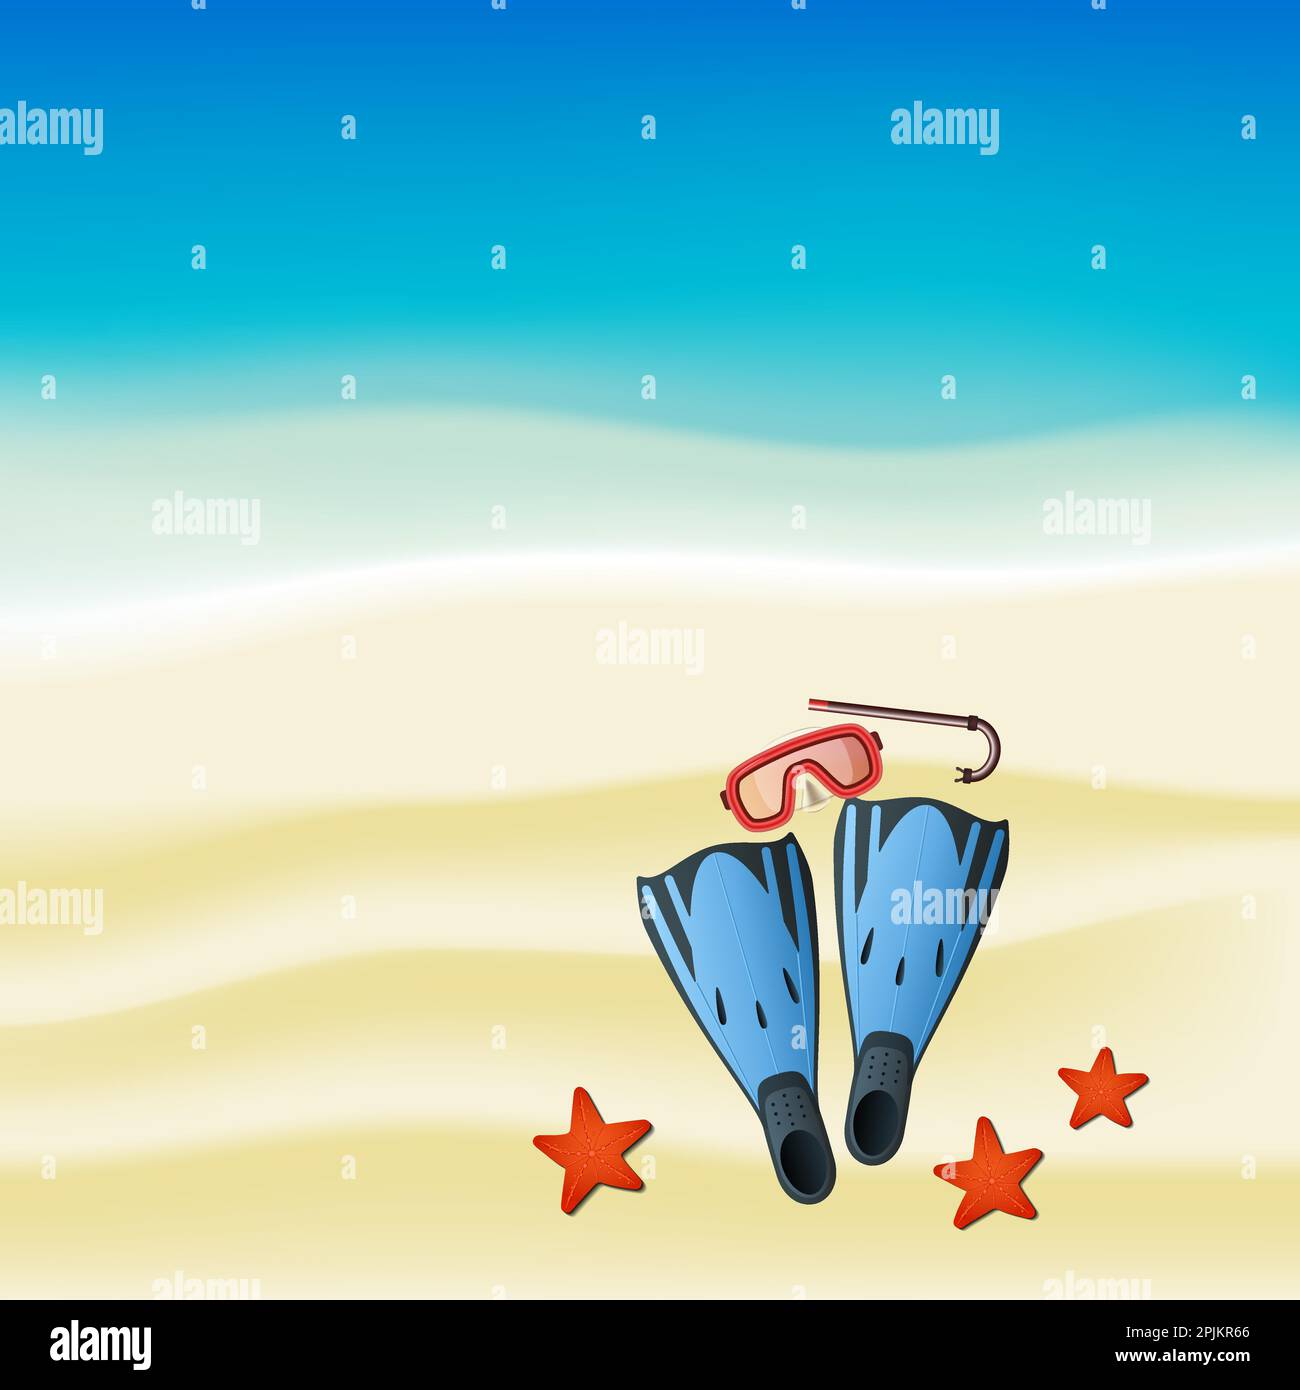 Tauchen farbige Kit mit Schnorchel, Maske und Flossen, die sich am Strand liegen. Jemand getaucht und dieser Satz verwendet und fand Sea Stars im Meer. Vektor illustra Stock Vektor